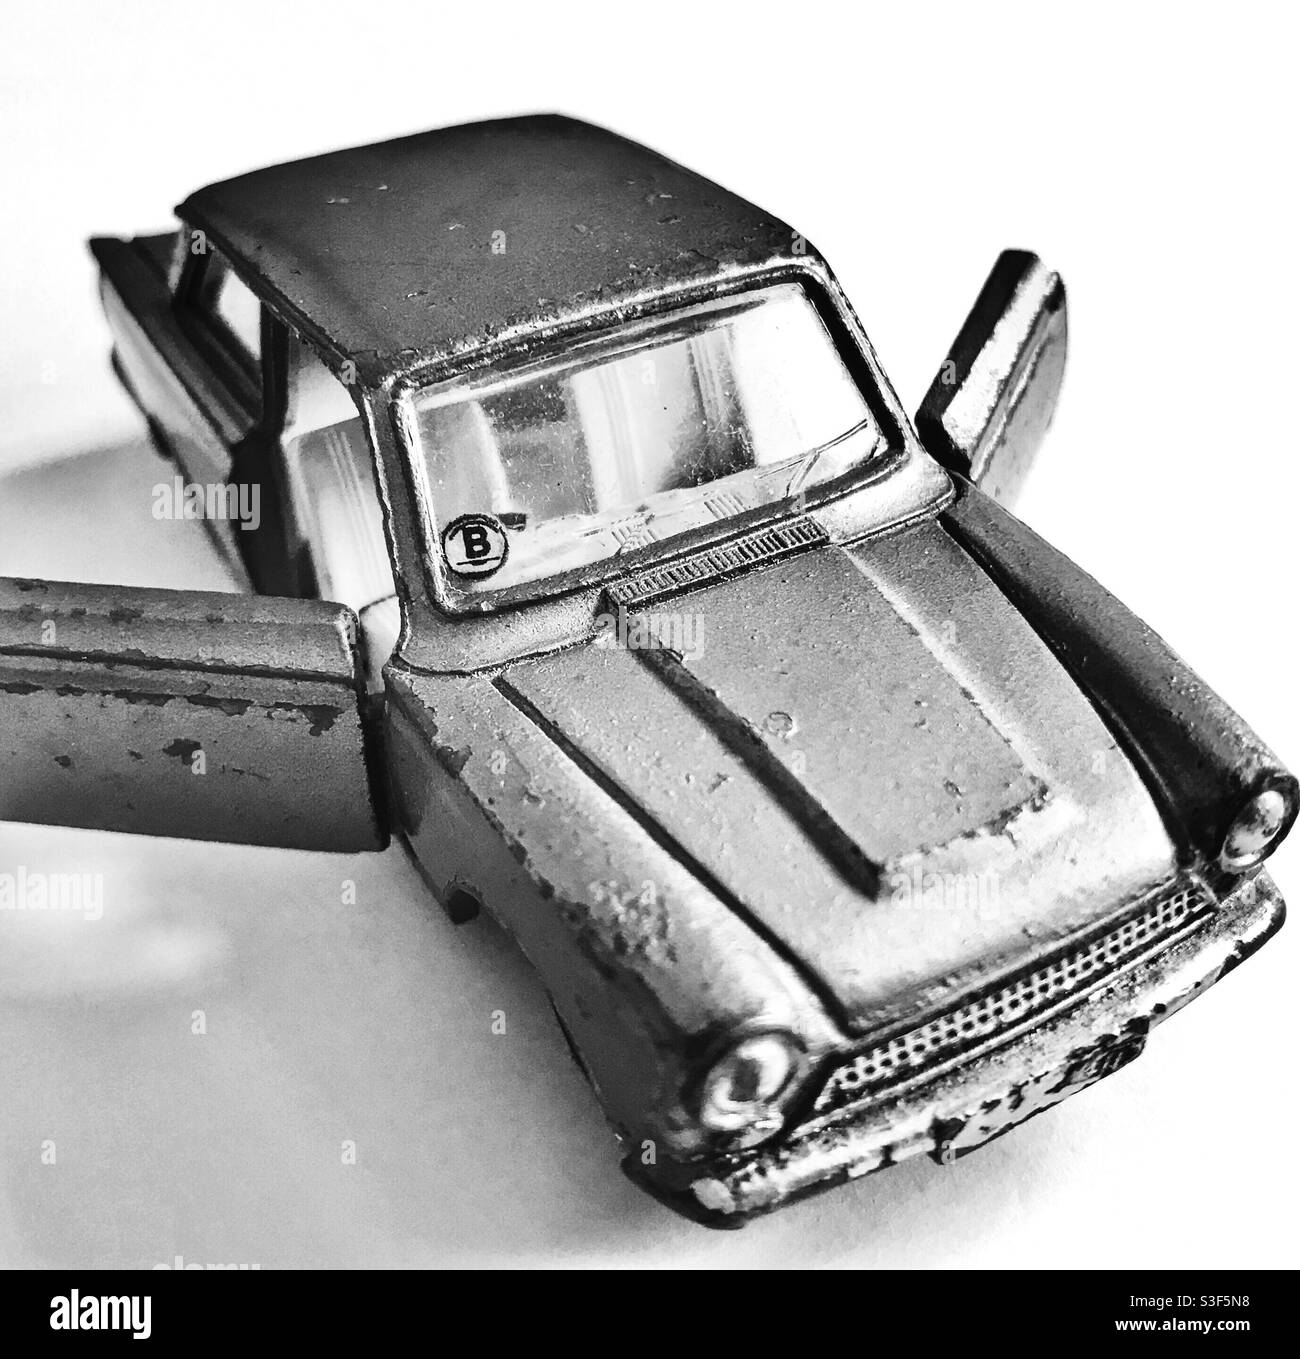 Nahaufnahme eines britischen 2-türigen Ford Cortina, Mark 1, Spielzeugautos aus den 60er Jahren. Stockfoto